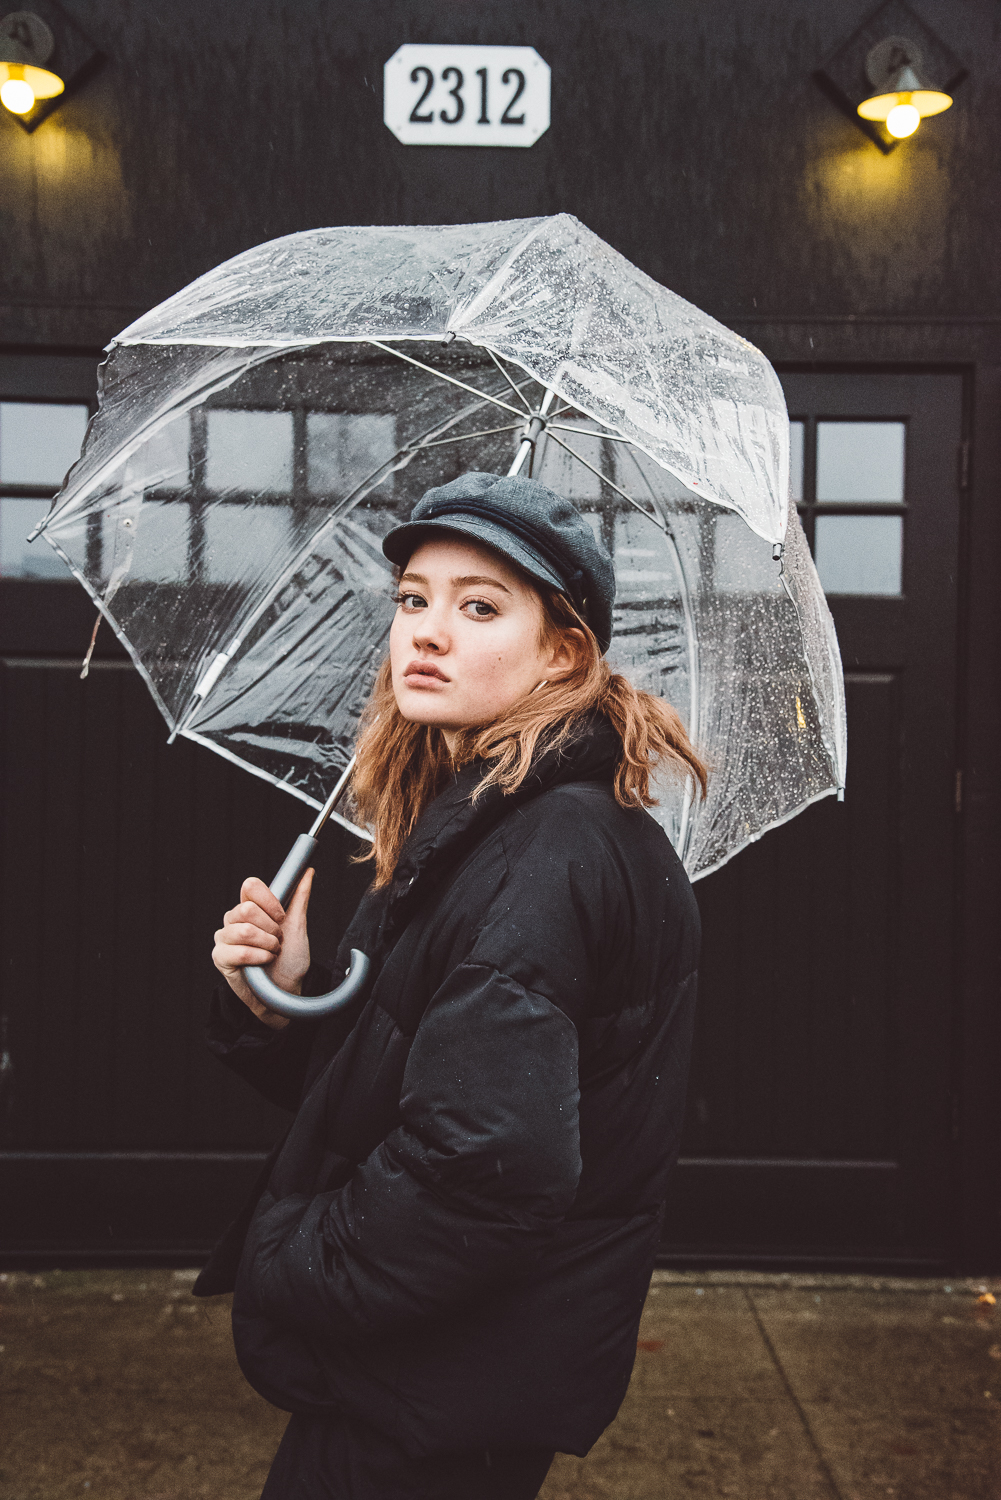 Rainy day portraits-umbrella photo-tacoma photographer (Copy)